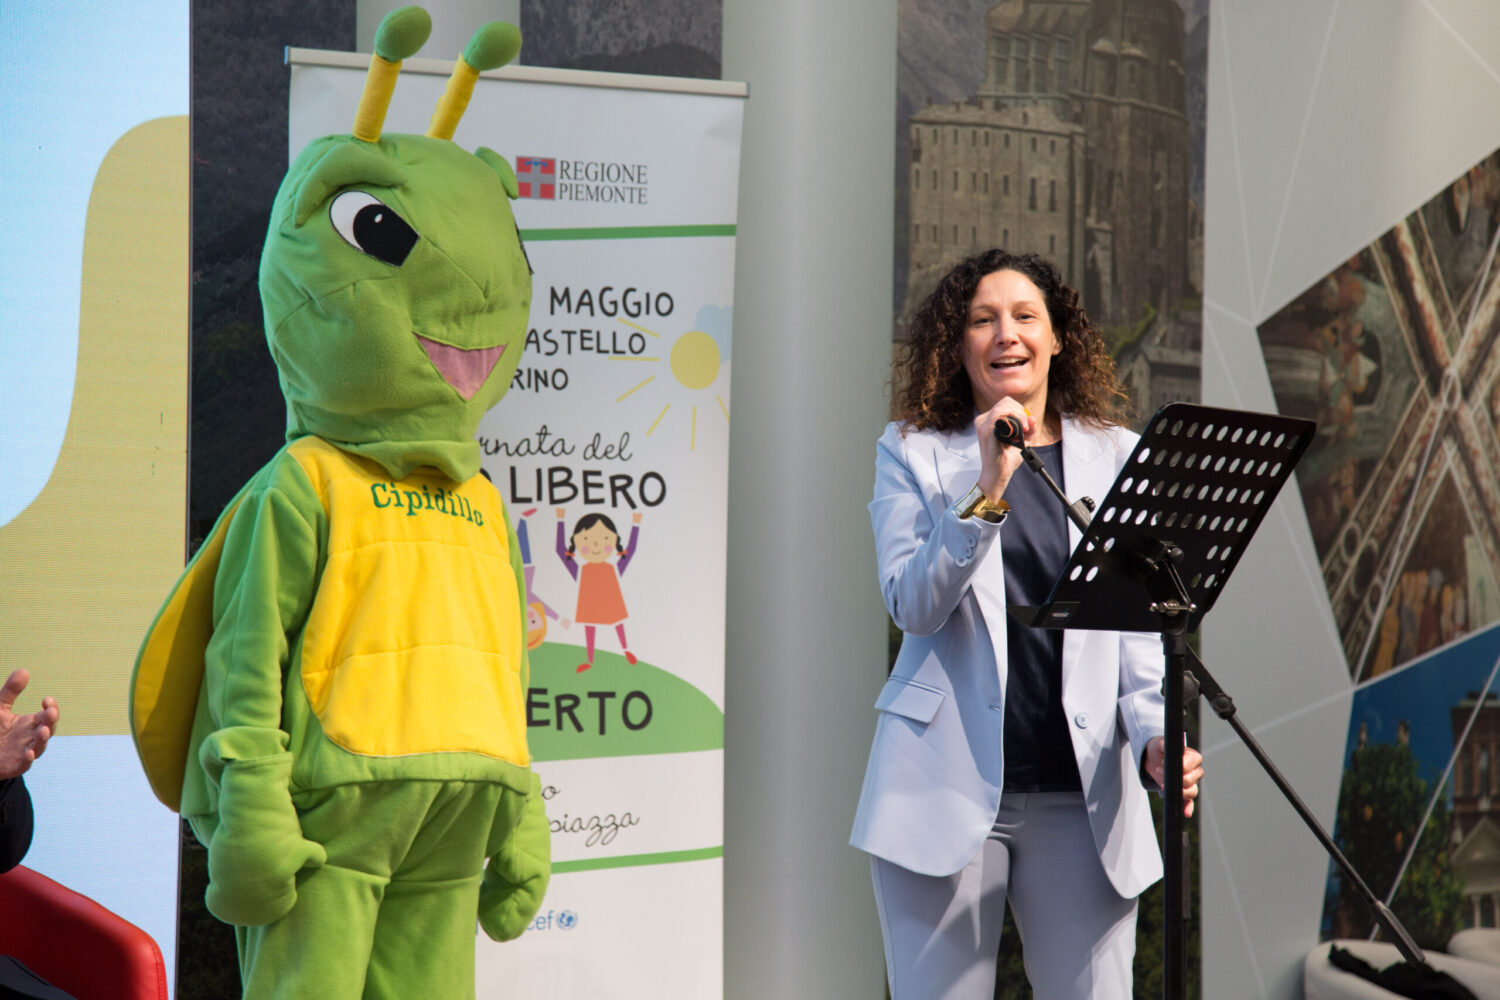 Chiara Caucino evento SBAM e giornata regionale del gioco libero all'aperto